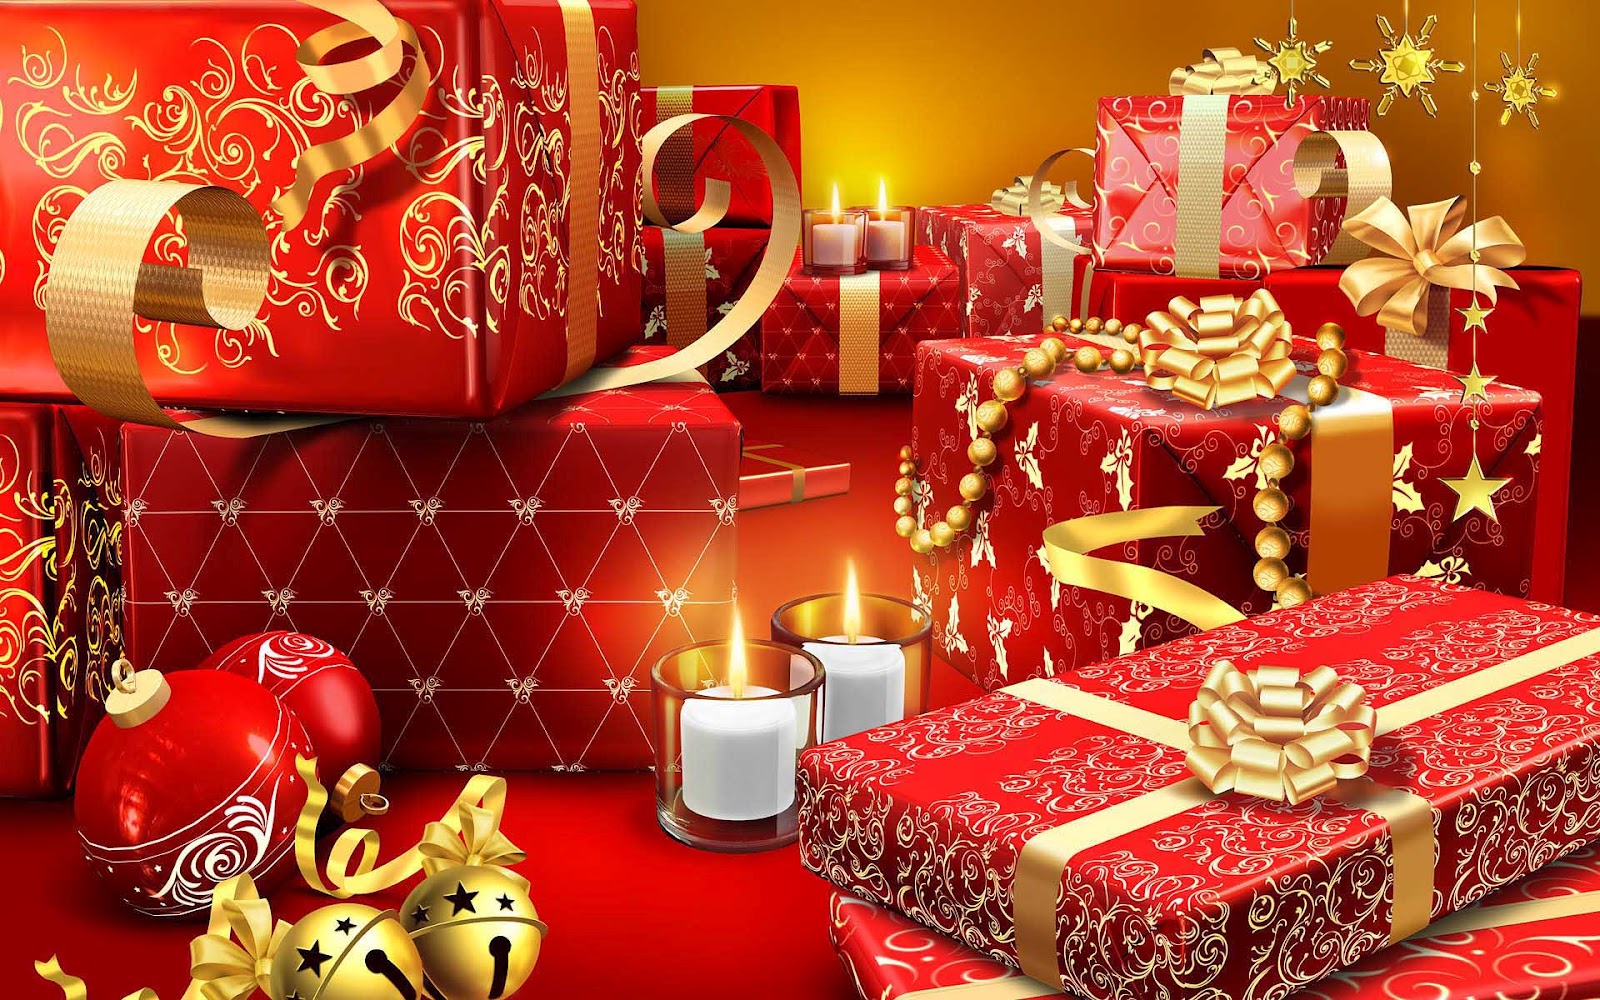 http://3.bp.blogspot.com/-8gSOIhLzYQ0/UCAd63xSukI/AAAAAAAAEcY/CHaBqQyIzqE/s1600/hd-kerst-achtergrond-met-cadeautjes-kerst-wallpaper.jpg